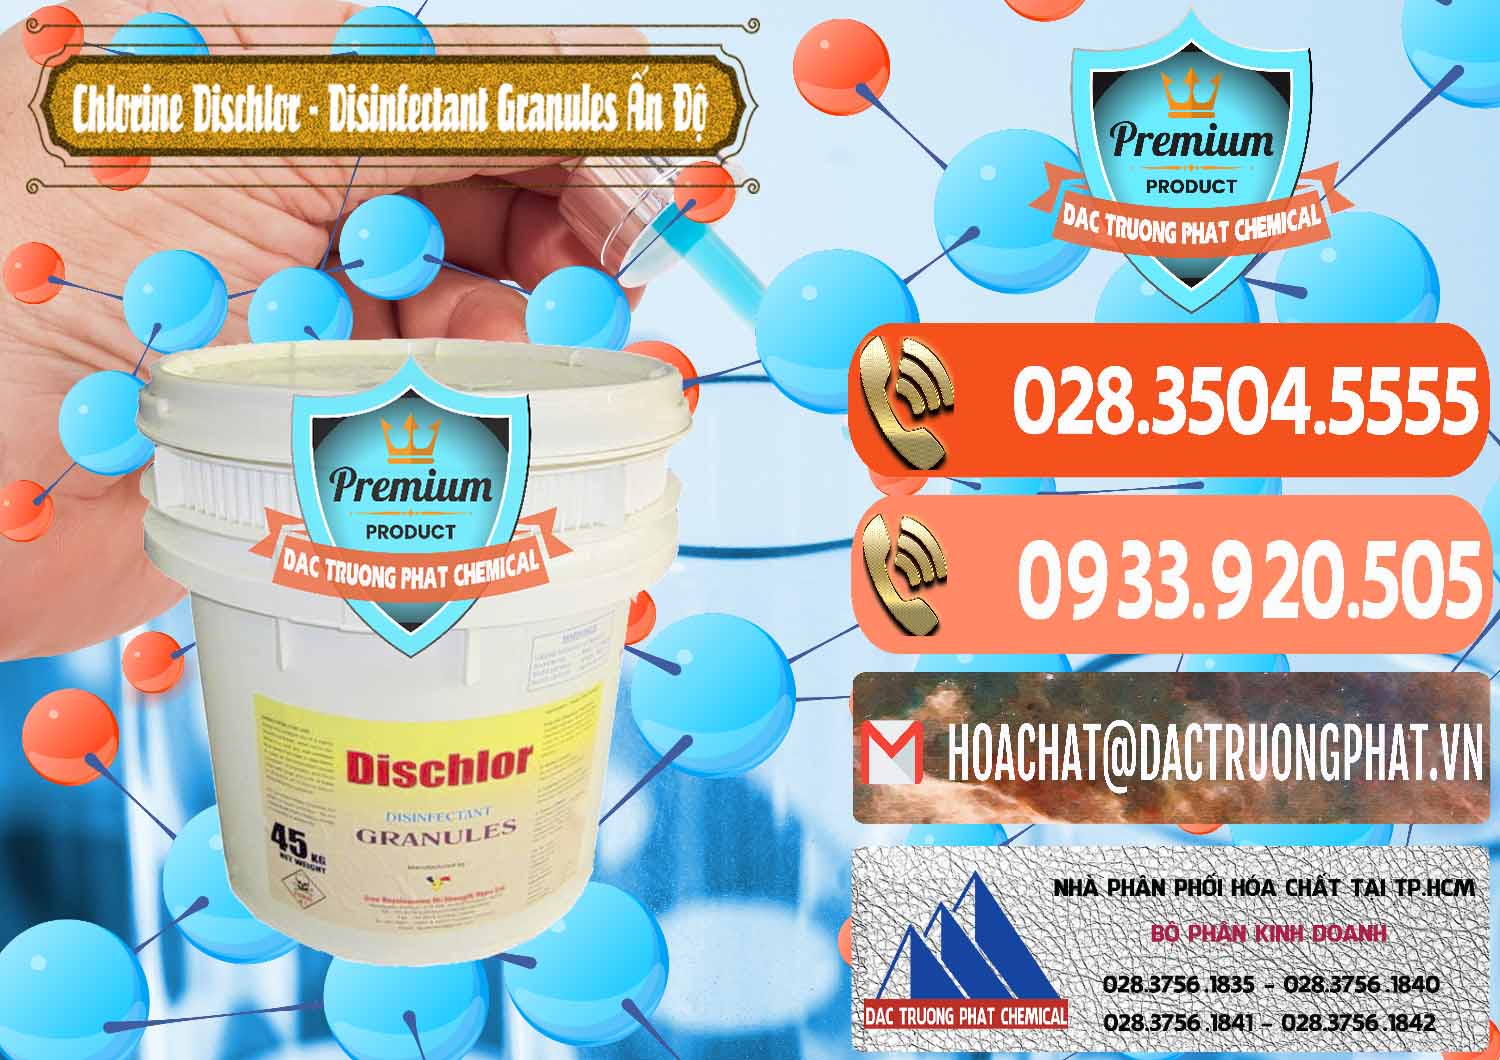 Cty bán & phân phối Chlorine – Clorin 70% Dischlor - Disinfectant Granules Ấn Độ India - 0248 - Cty chuyên phân phối & kinh doanh hóa chất tại TP.HCM - hoachatmientay.com